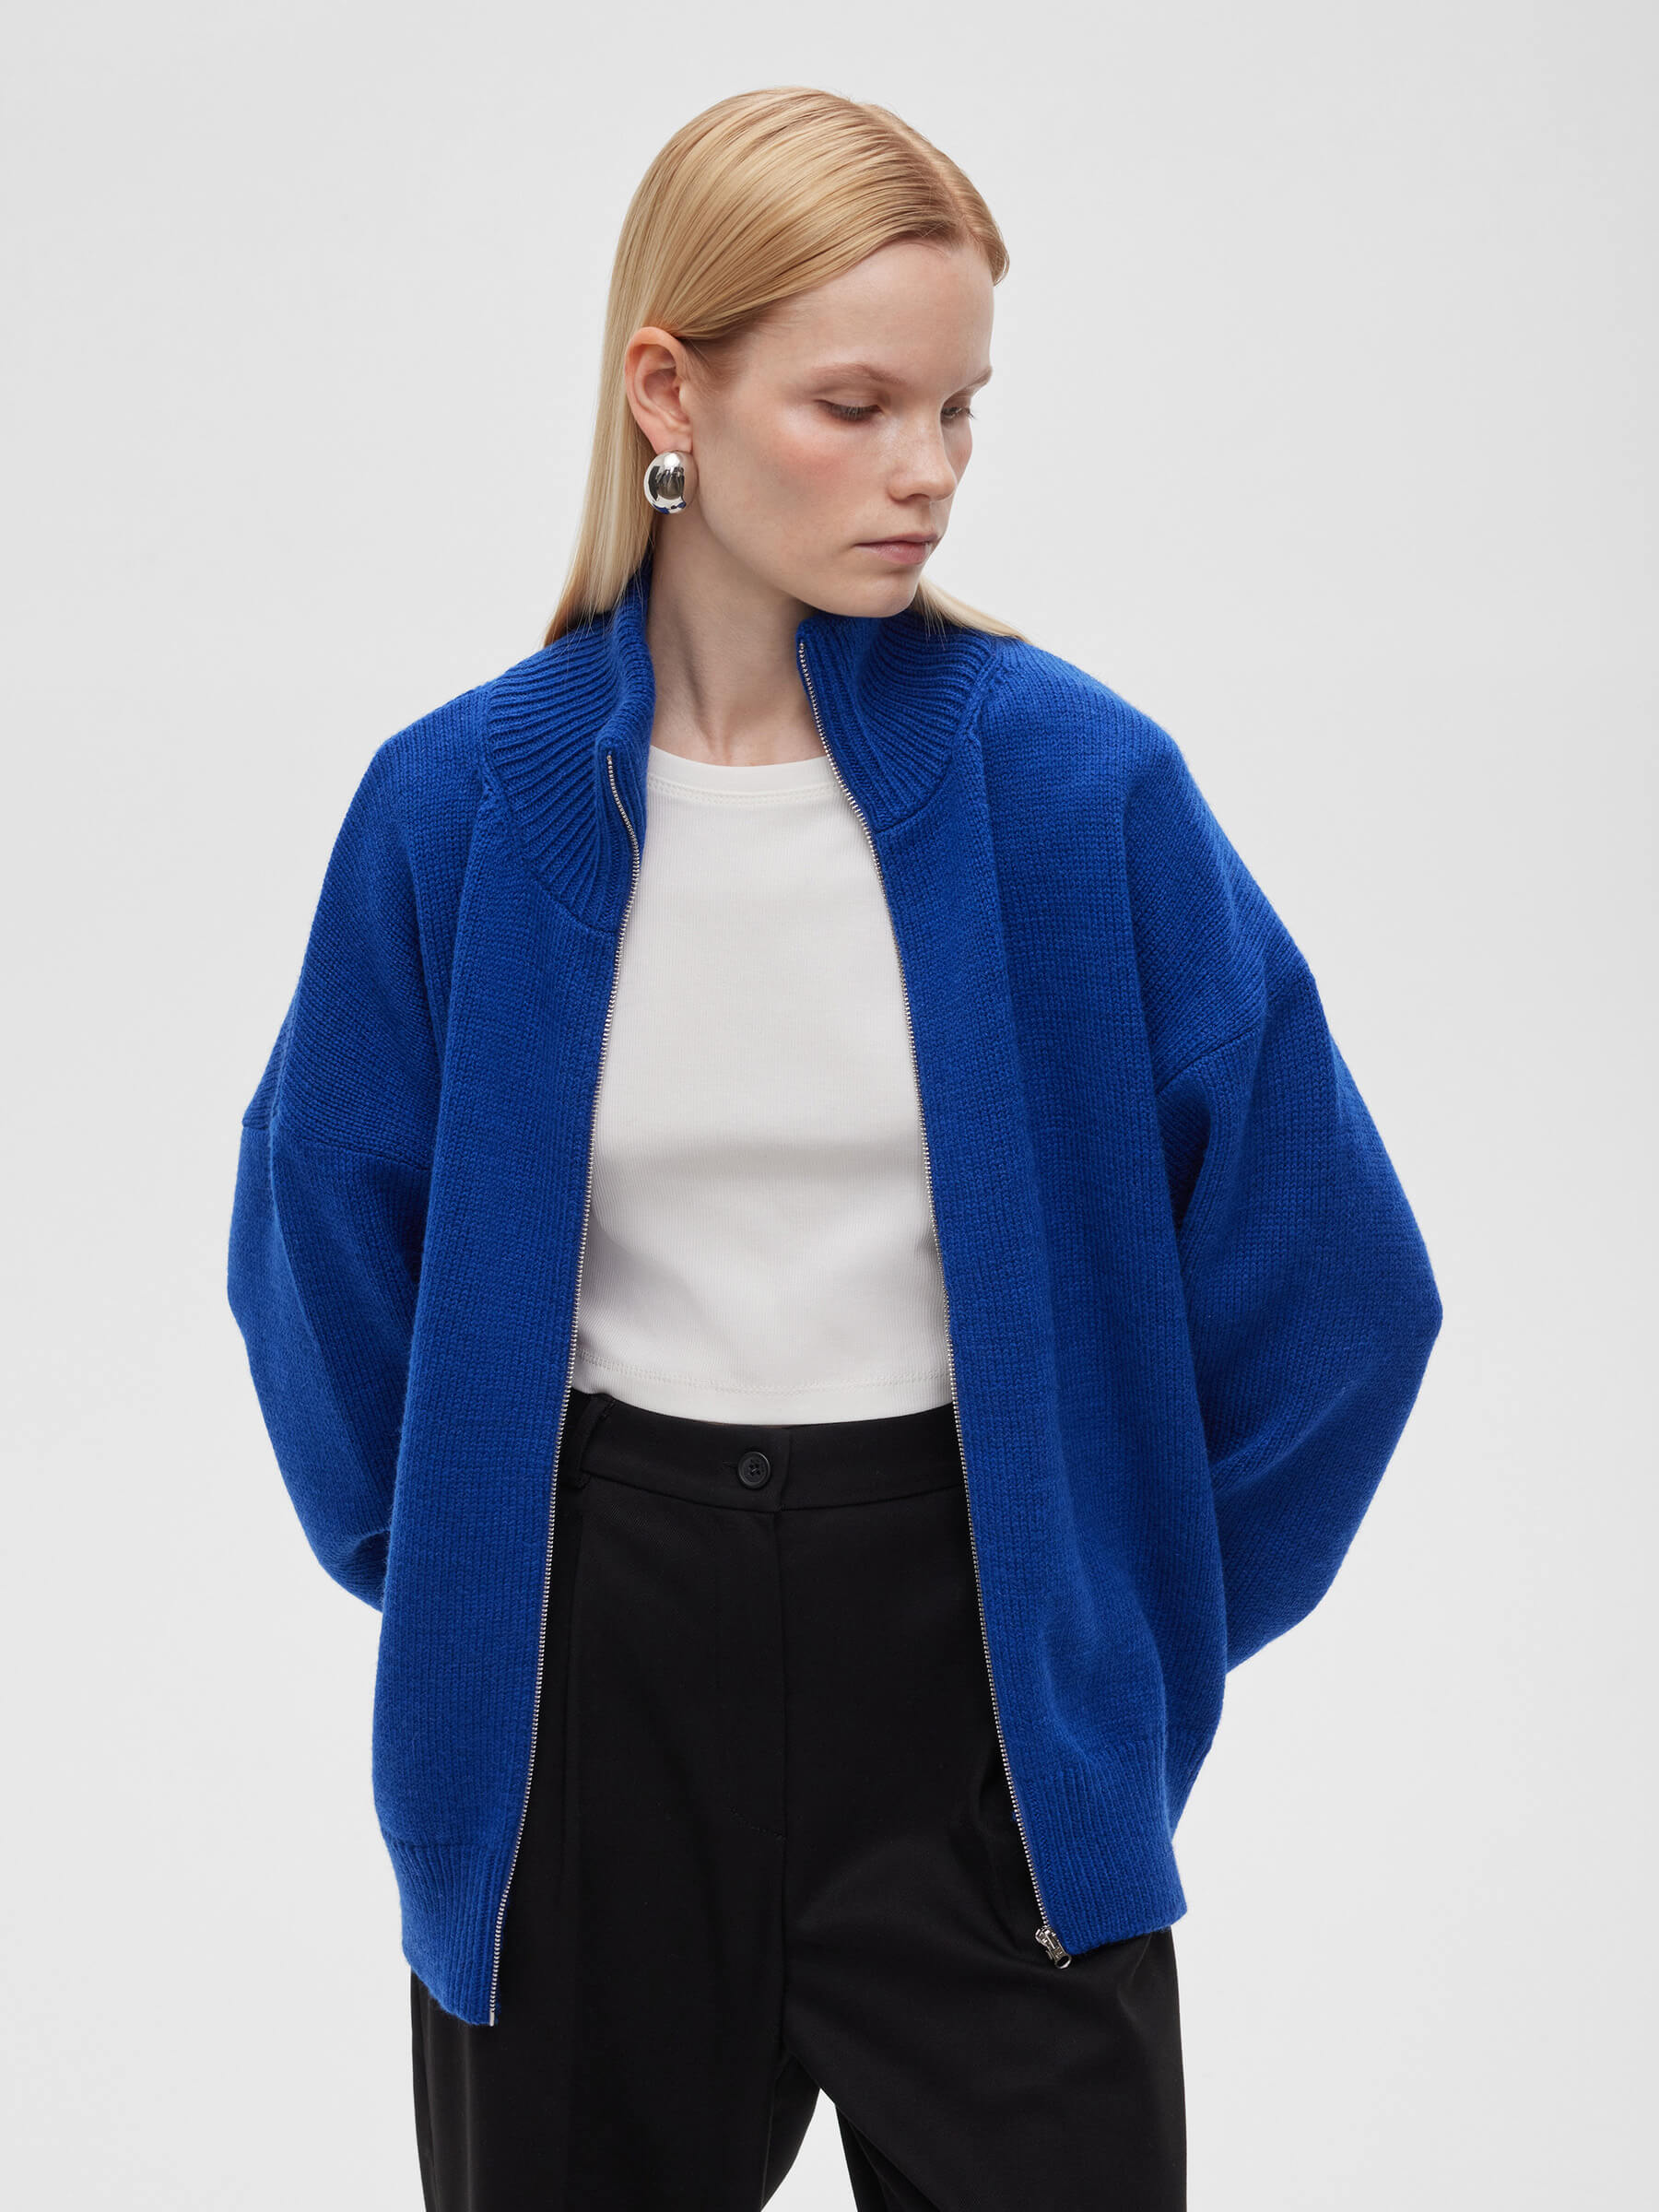 Женский свитер на молнии из шерсти, цвет – синий фотографии